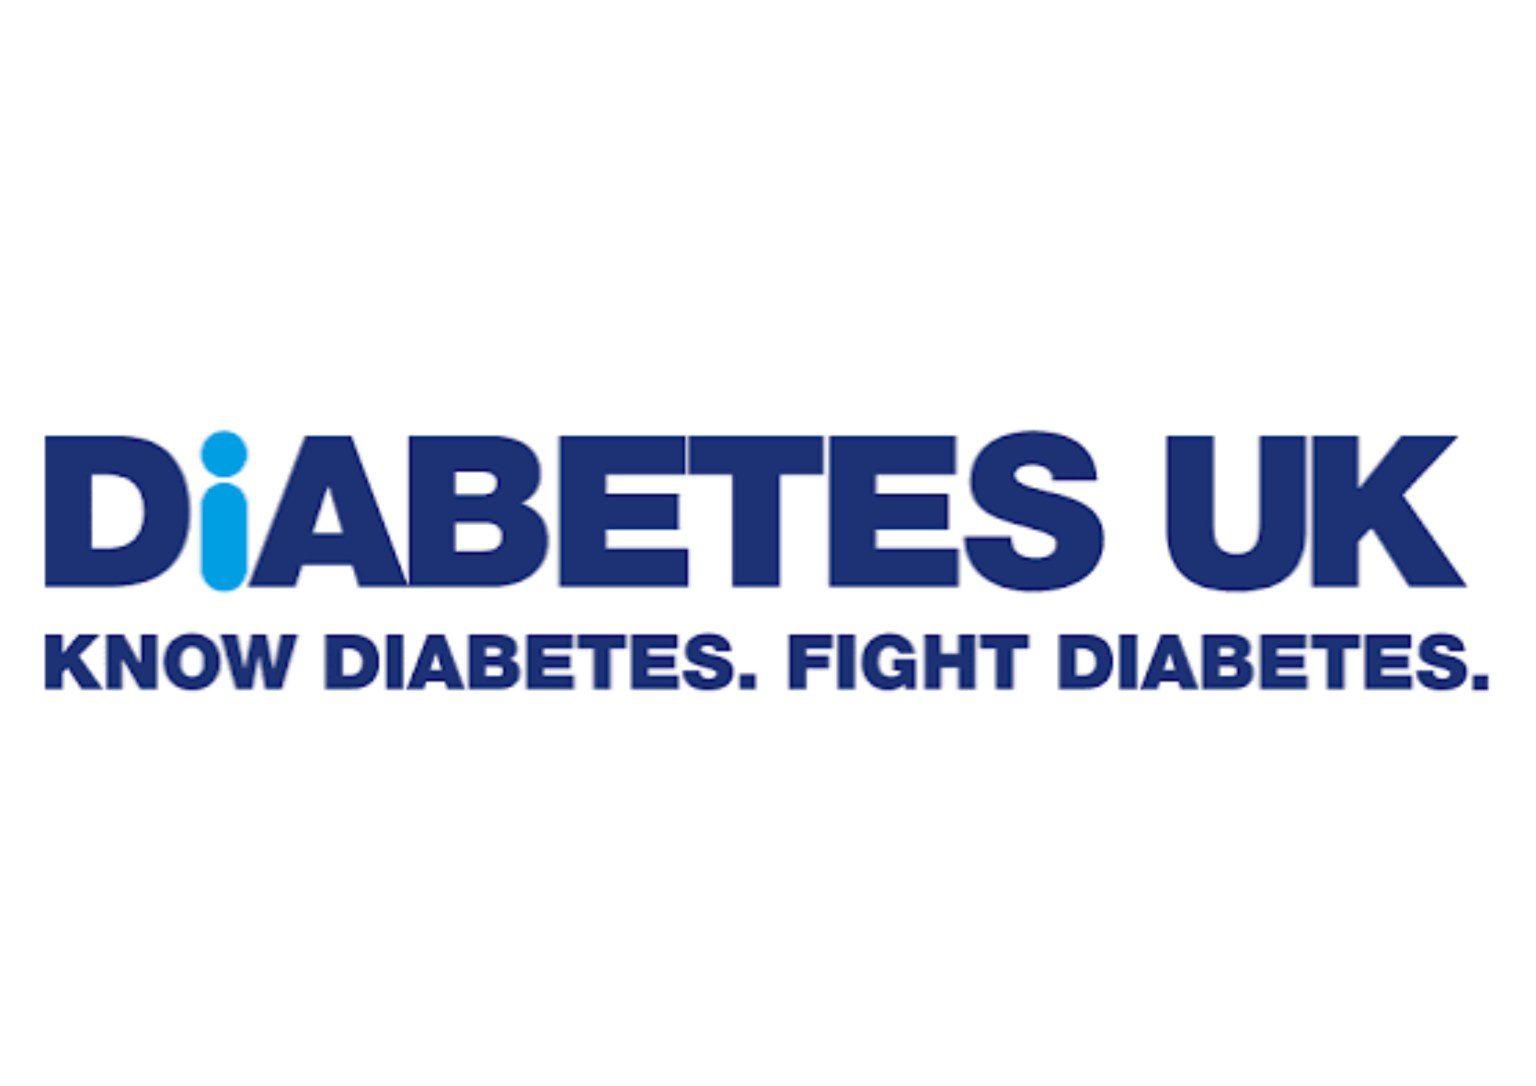 diabetes uk